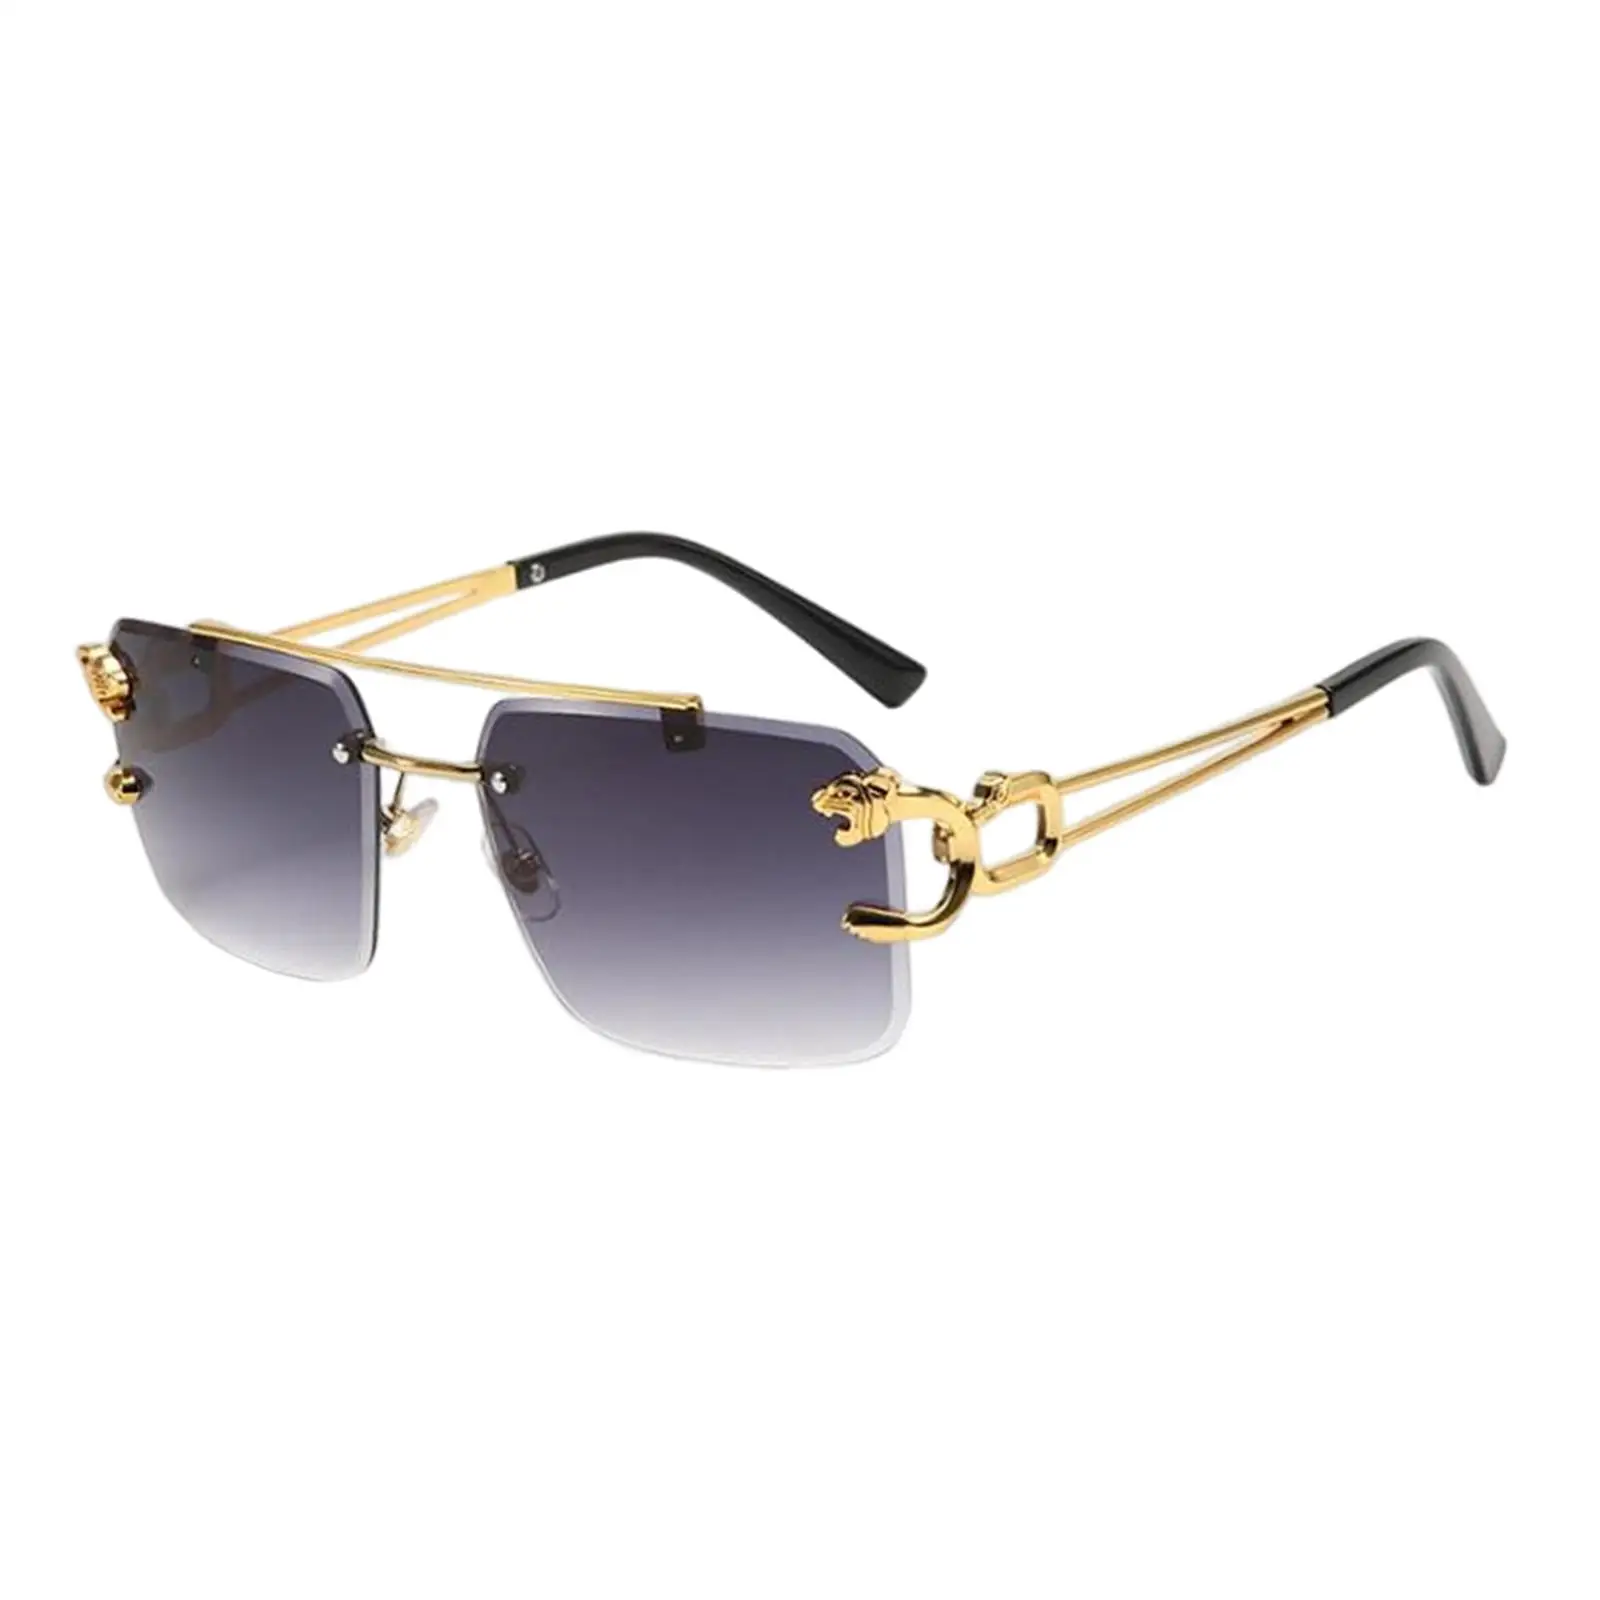 Vintage Style Rimless Rectangle Sunglasses Tinted Lens Metal Frameless Eyewear Sunglasses for Women Men